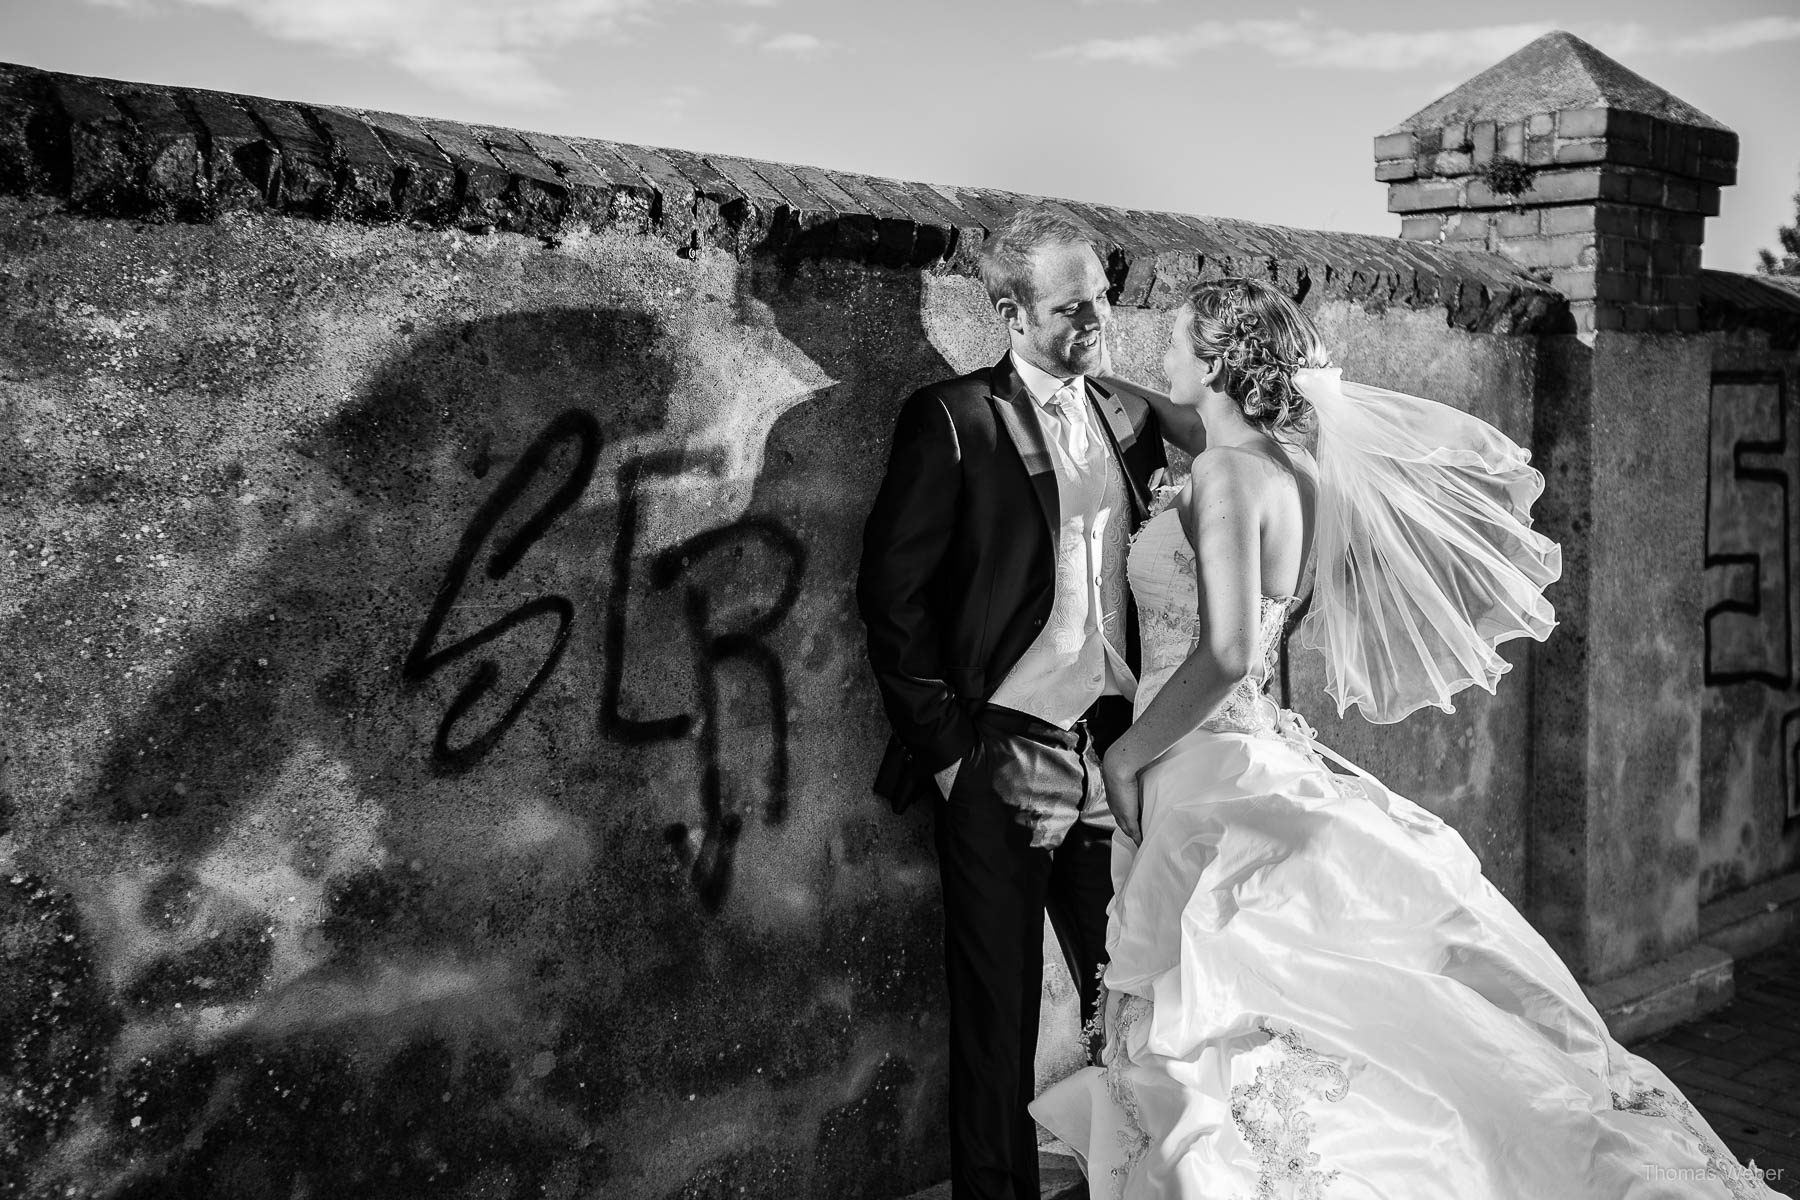 Hochzeit in der Burg Kniphausen Wilhelmshaven und Hochzeitsfeier im Le Patron am Meer, Hochzeitsfotograf Wilhelmshaven